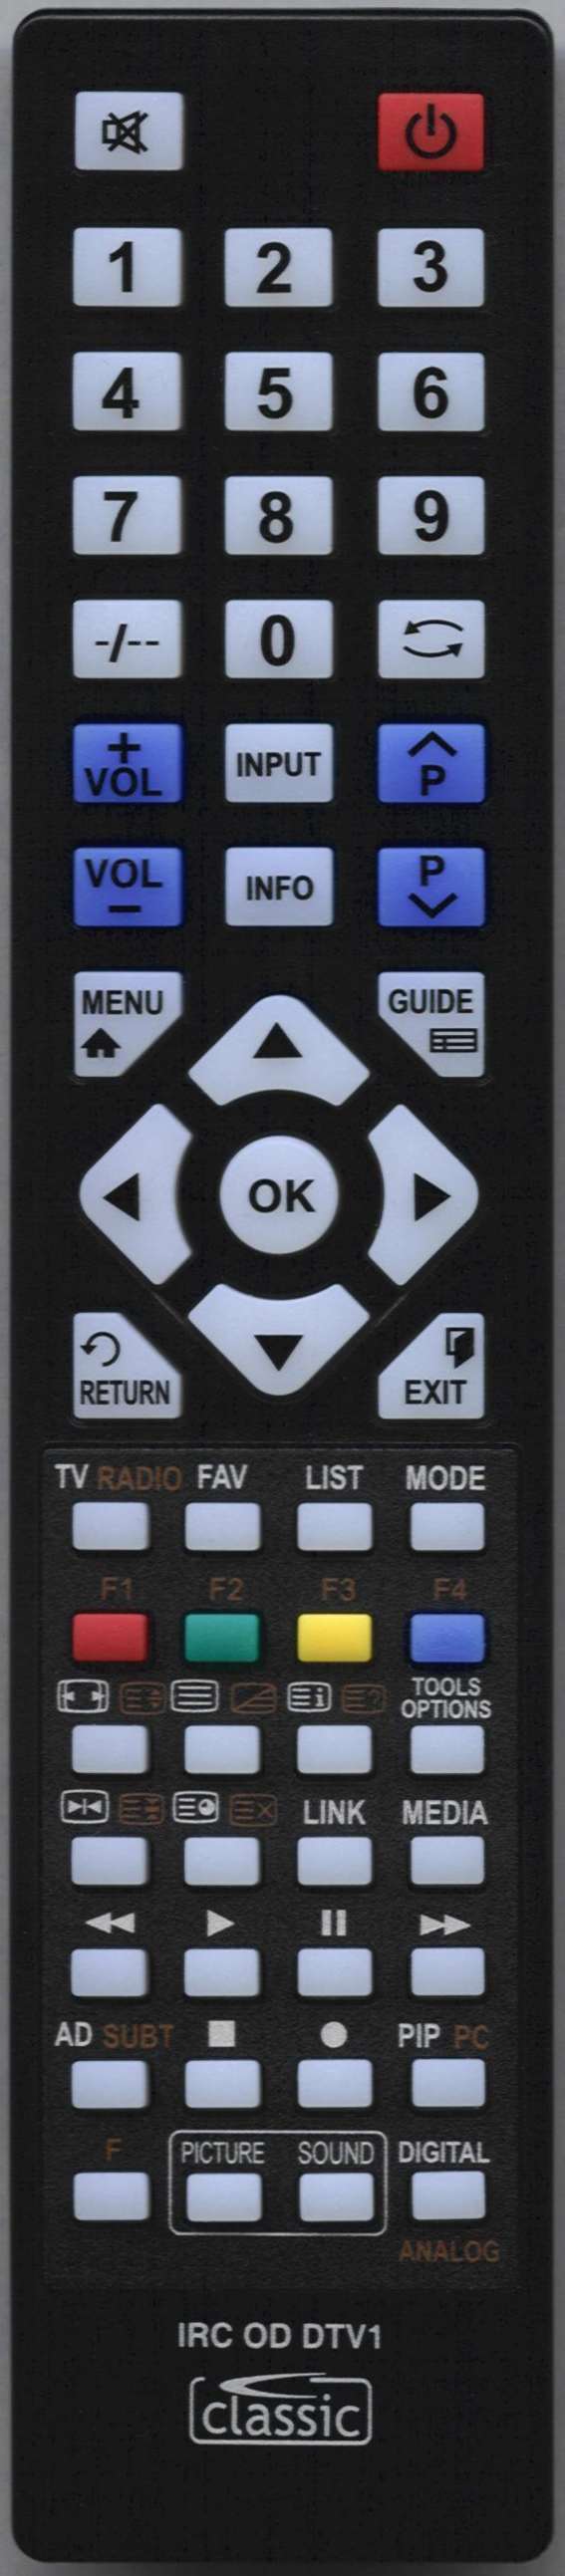 UMC Q19/4 Remote Control Alternative